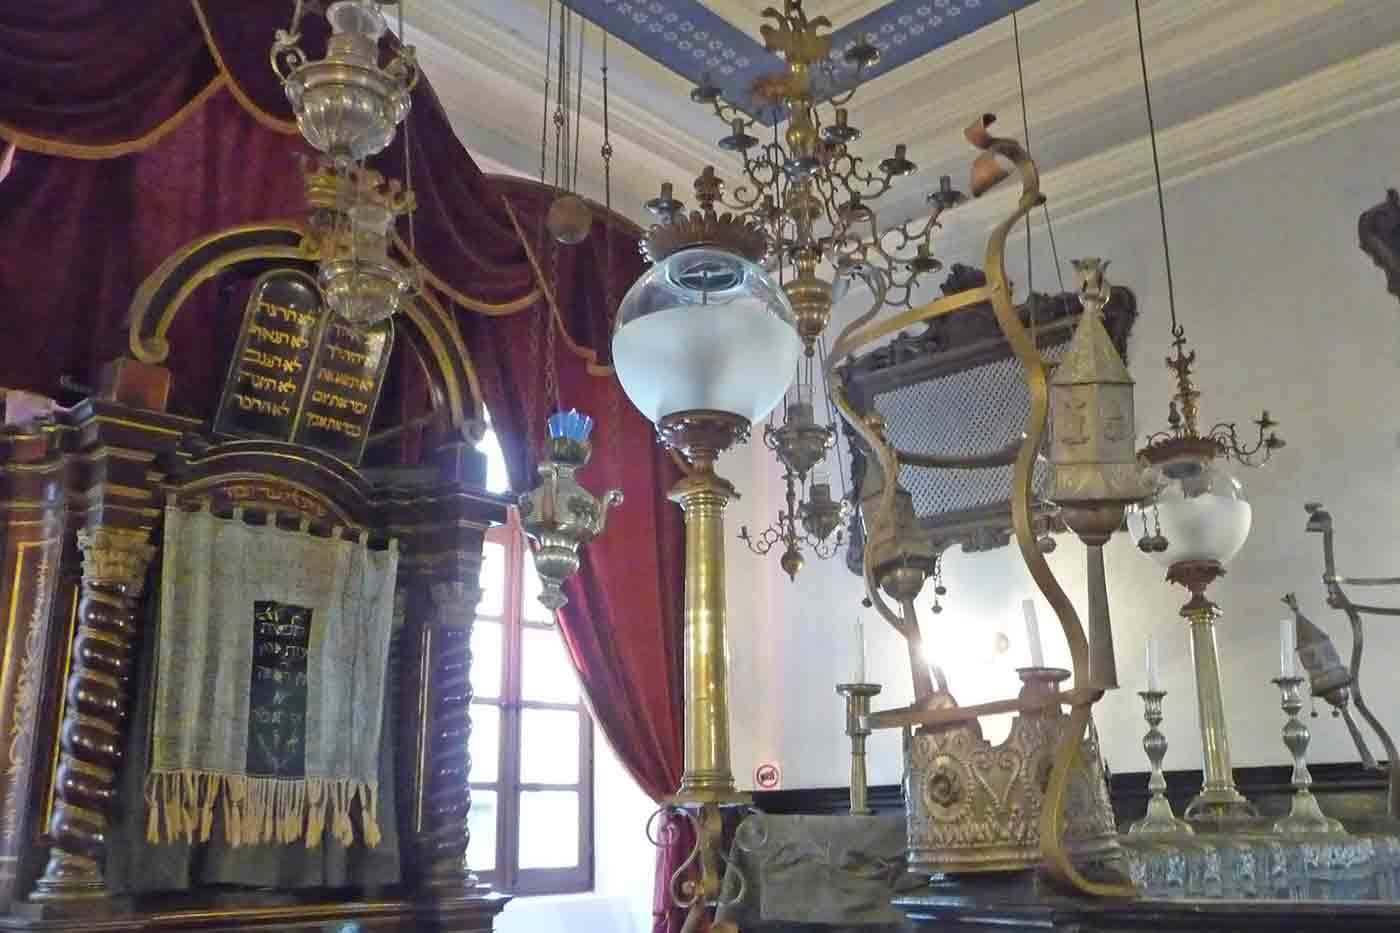 Old Jewish Synagogue